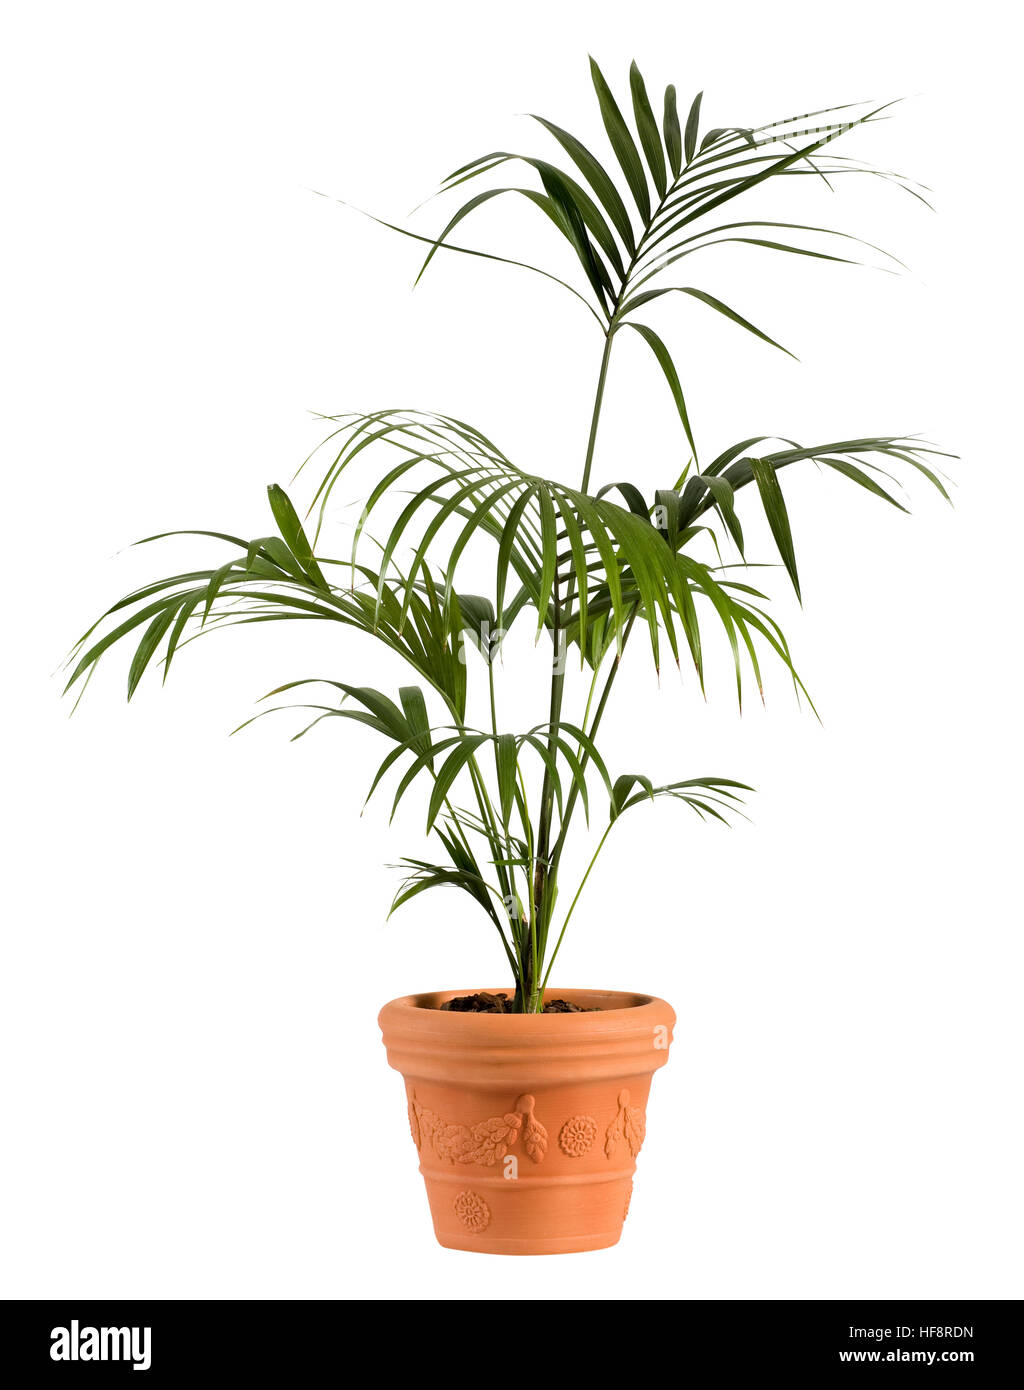 Schließen Sie attraktive Kenzia Palme Pflanze auf gewöhnliche Brown Pot isoliert auf weißem Hintergrund. Stockfoto